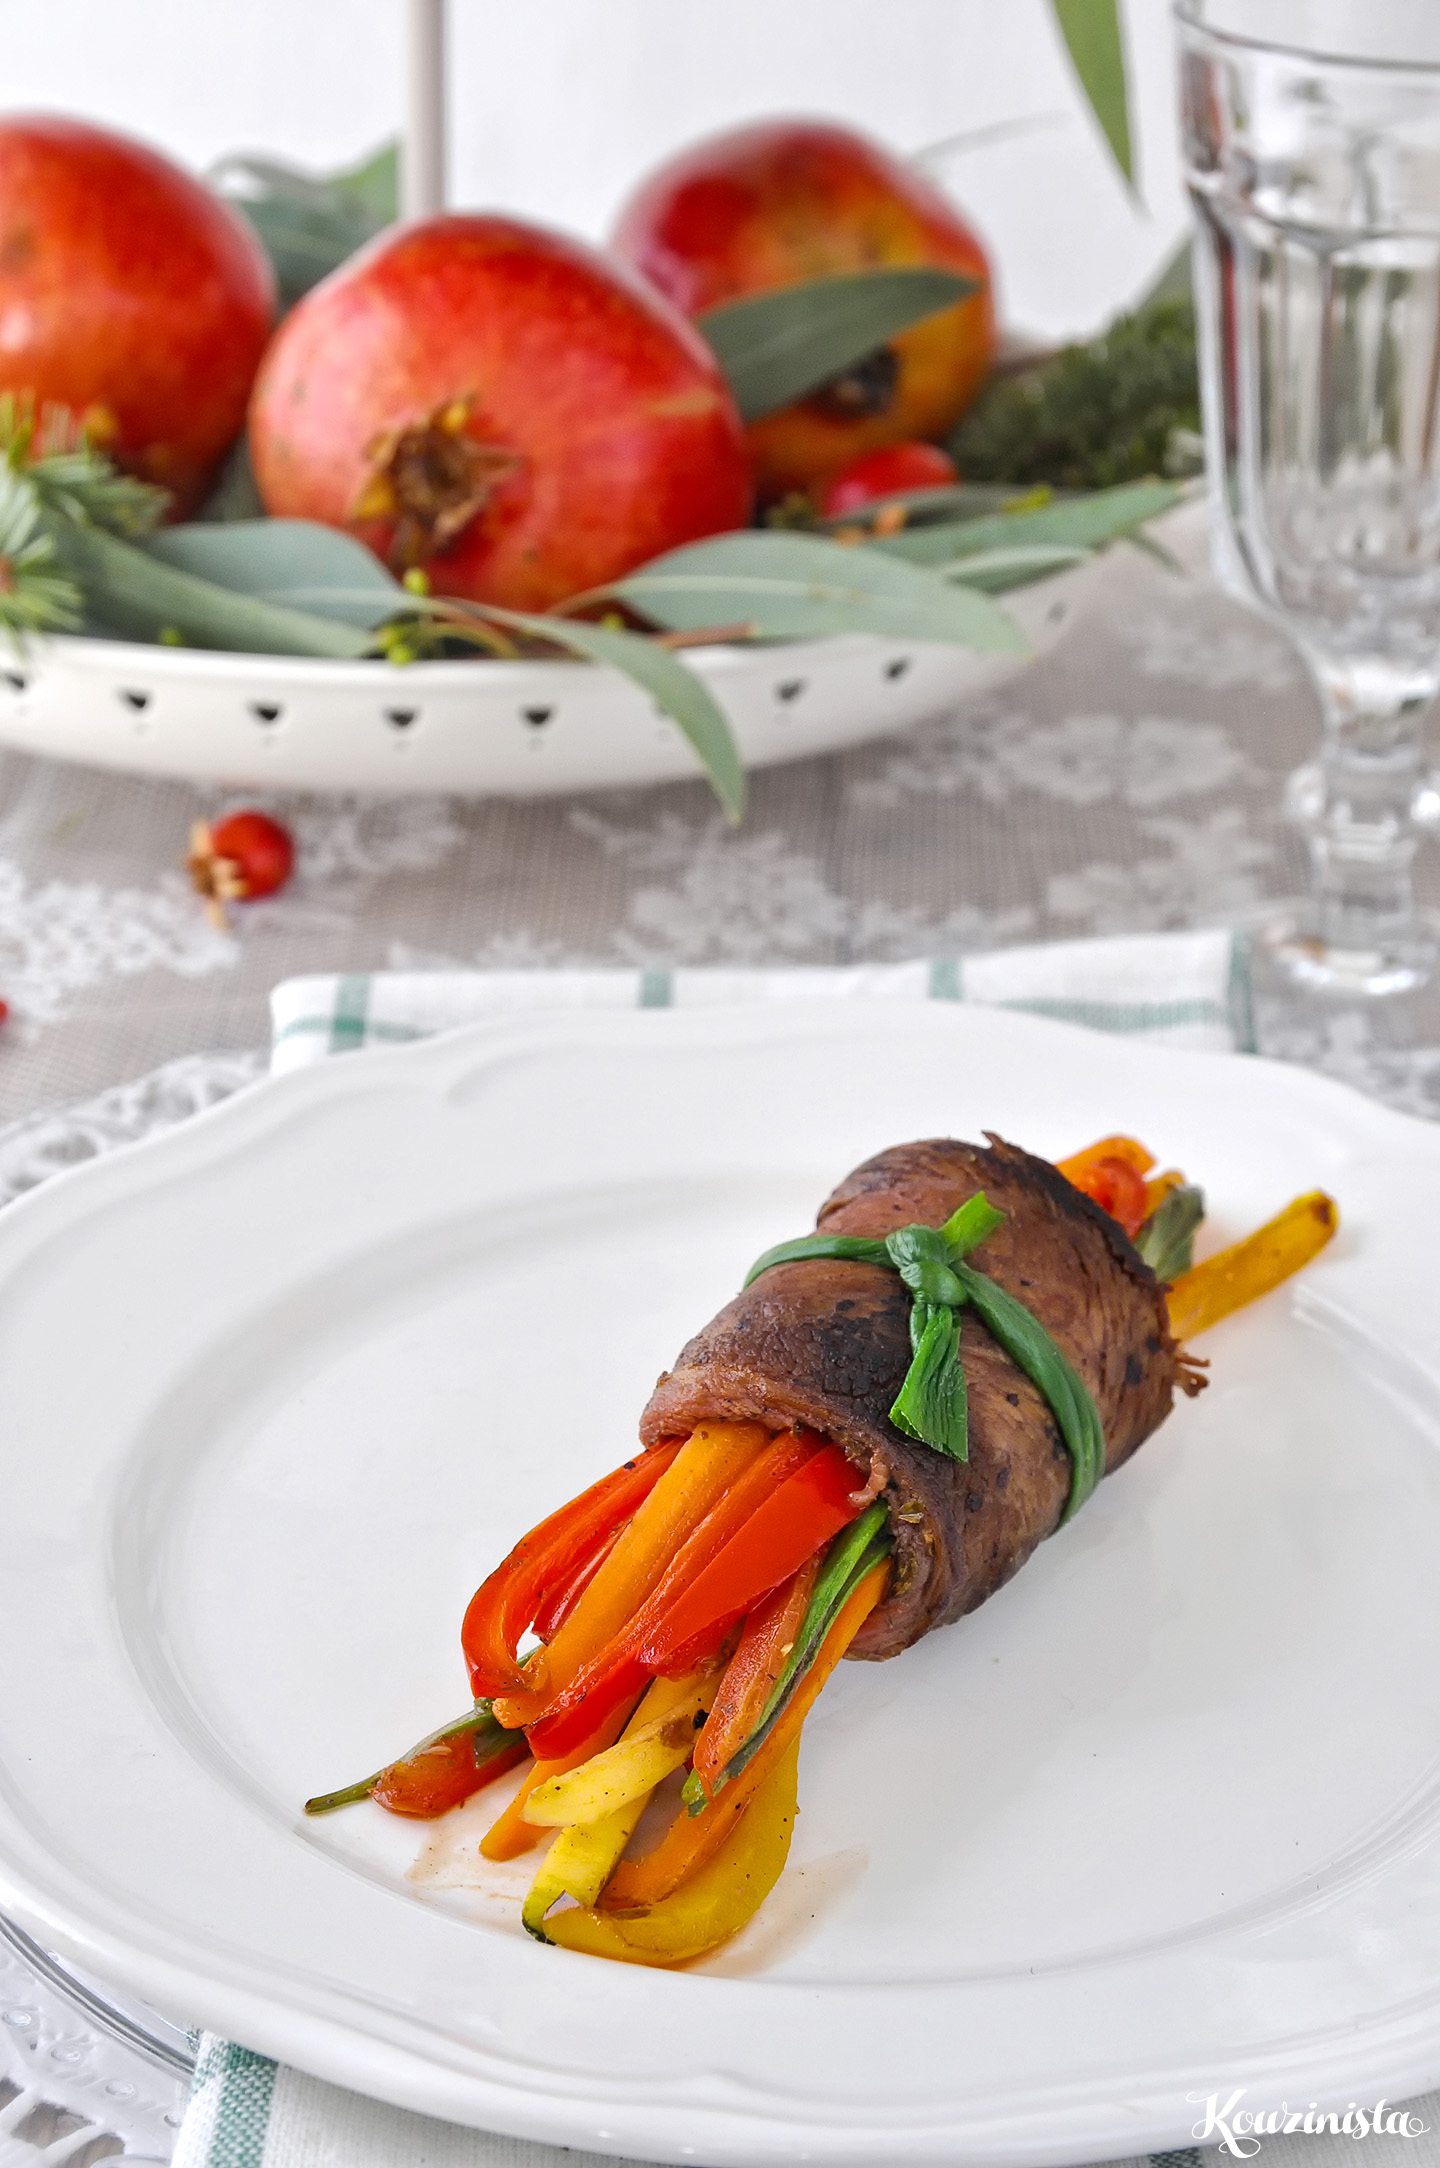 Μοσχαρίσια ρολάκια με λαχανικά & γλάσο βαλσάμικου / Balsamic glazed steak rolls